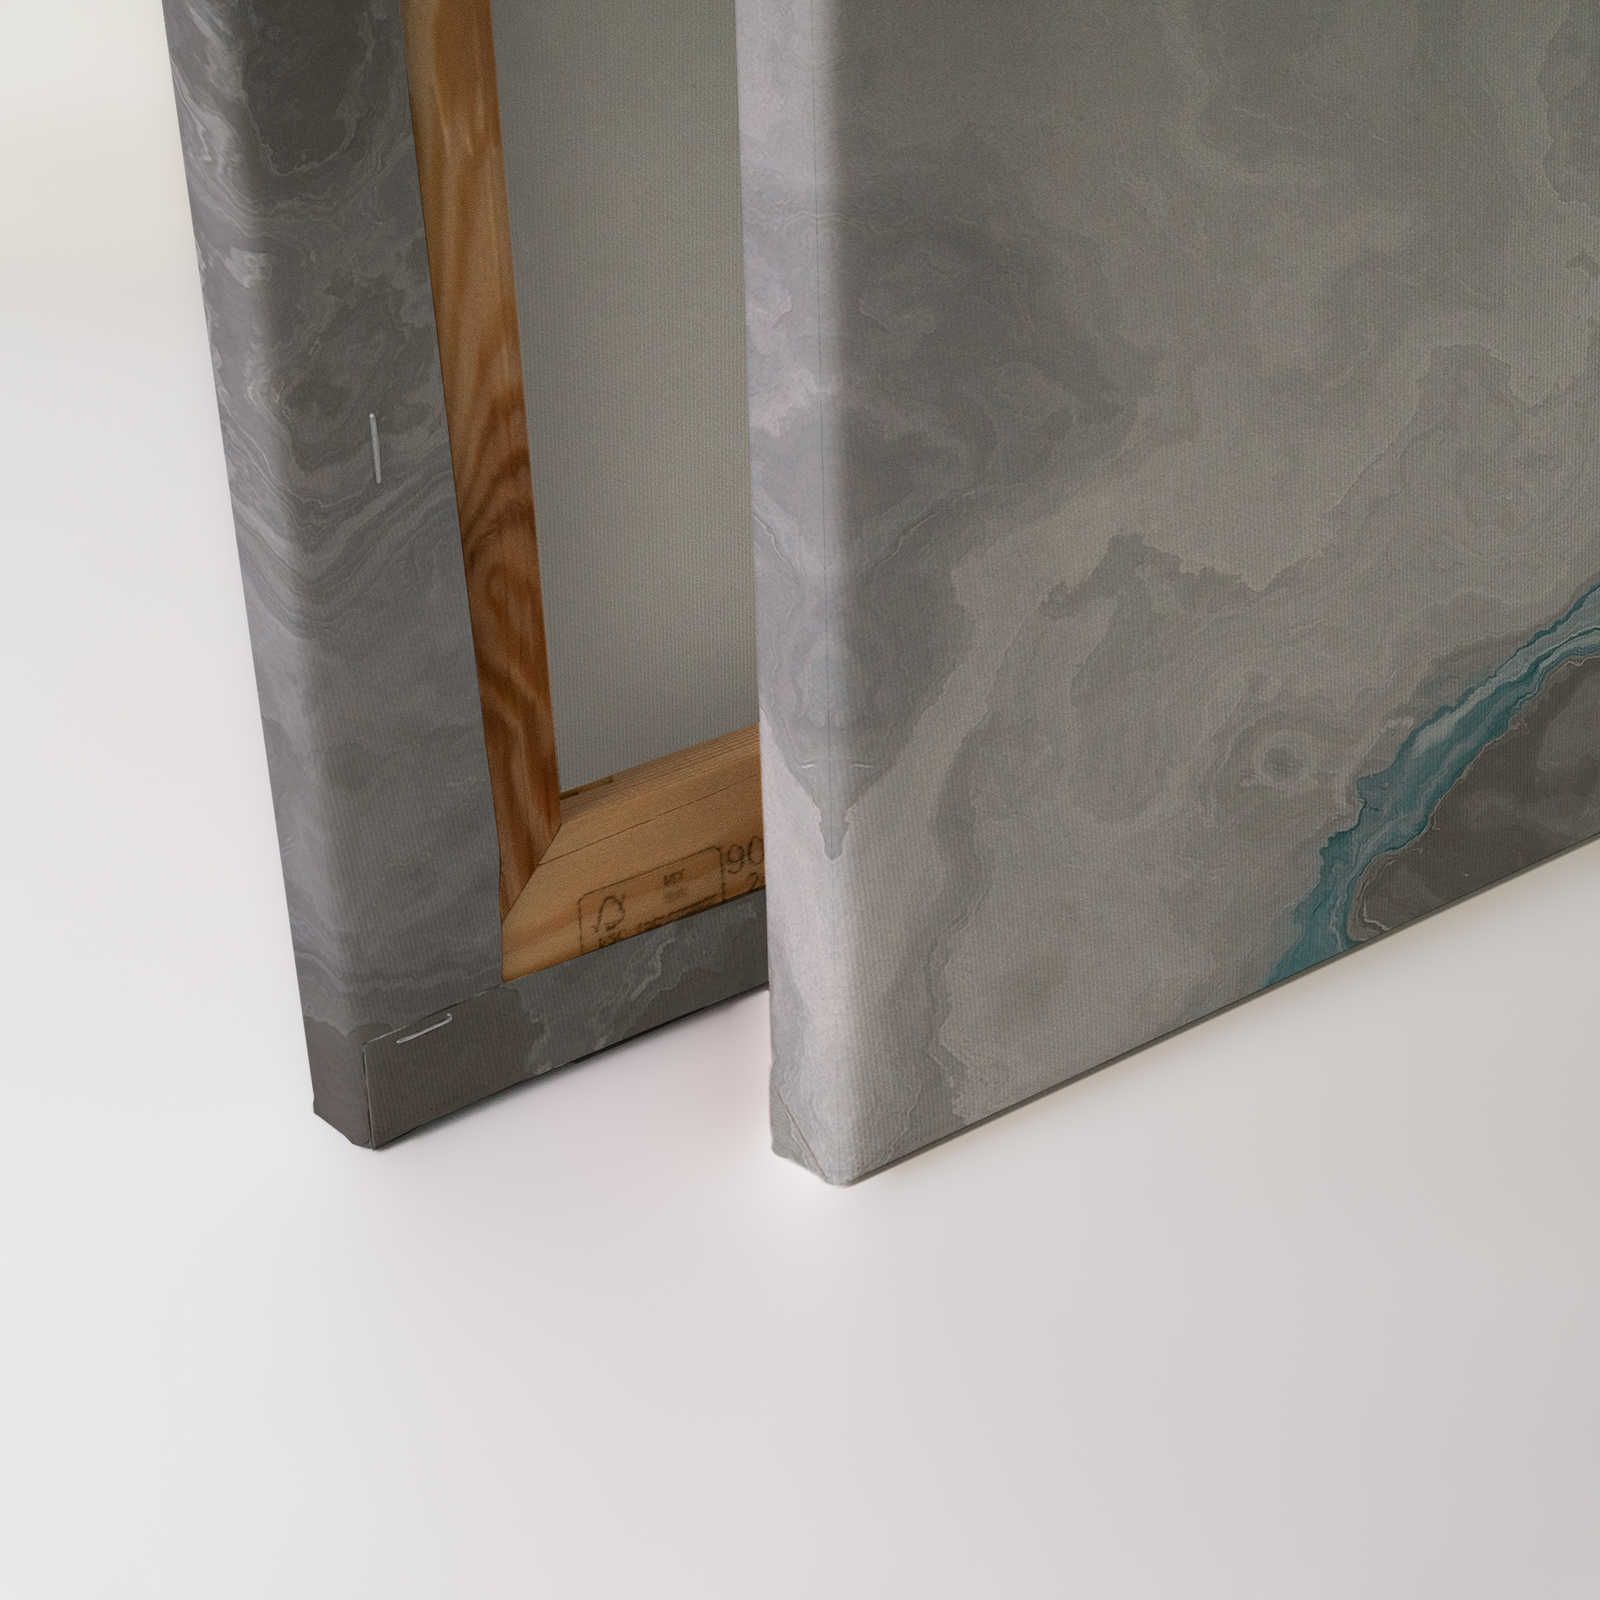             Quadro su tela marmorizzata con ottica al quarzo - 0,90 m x 0,60 m
        